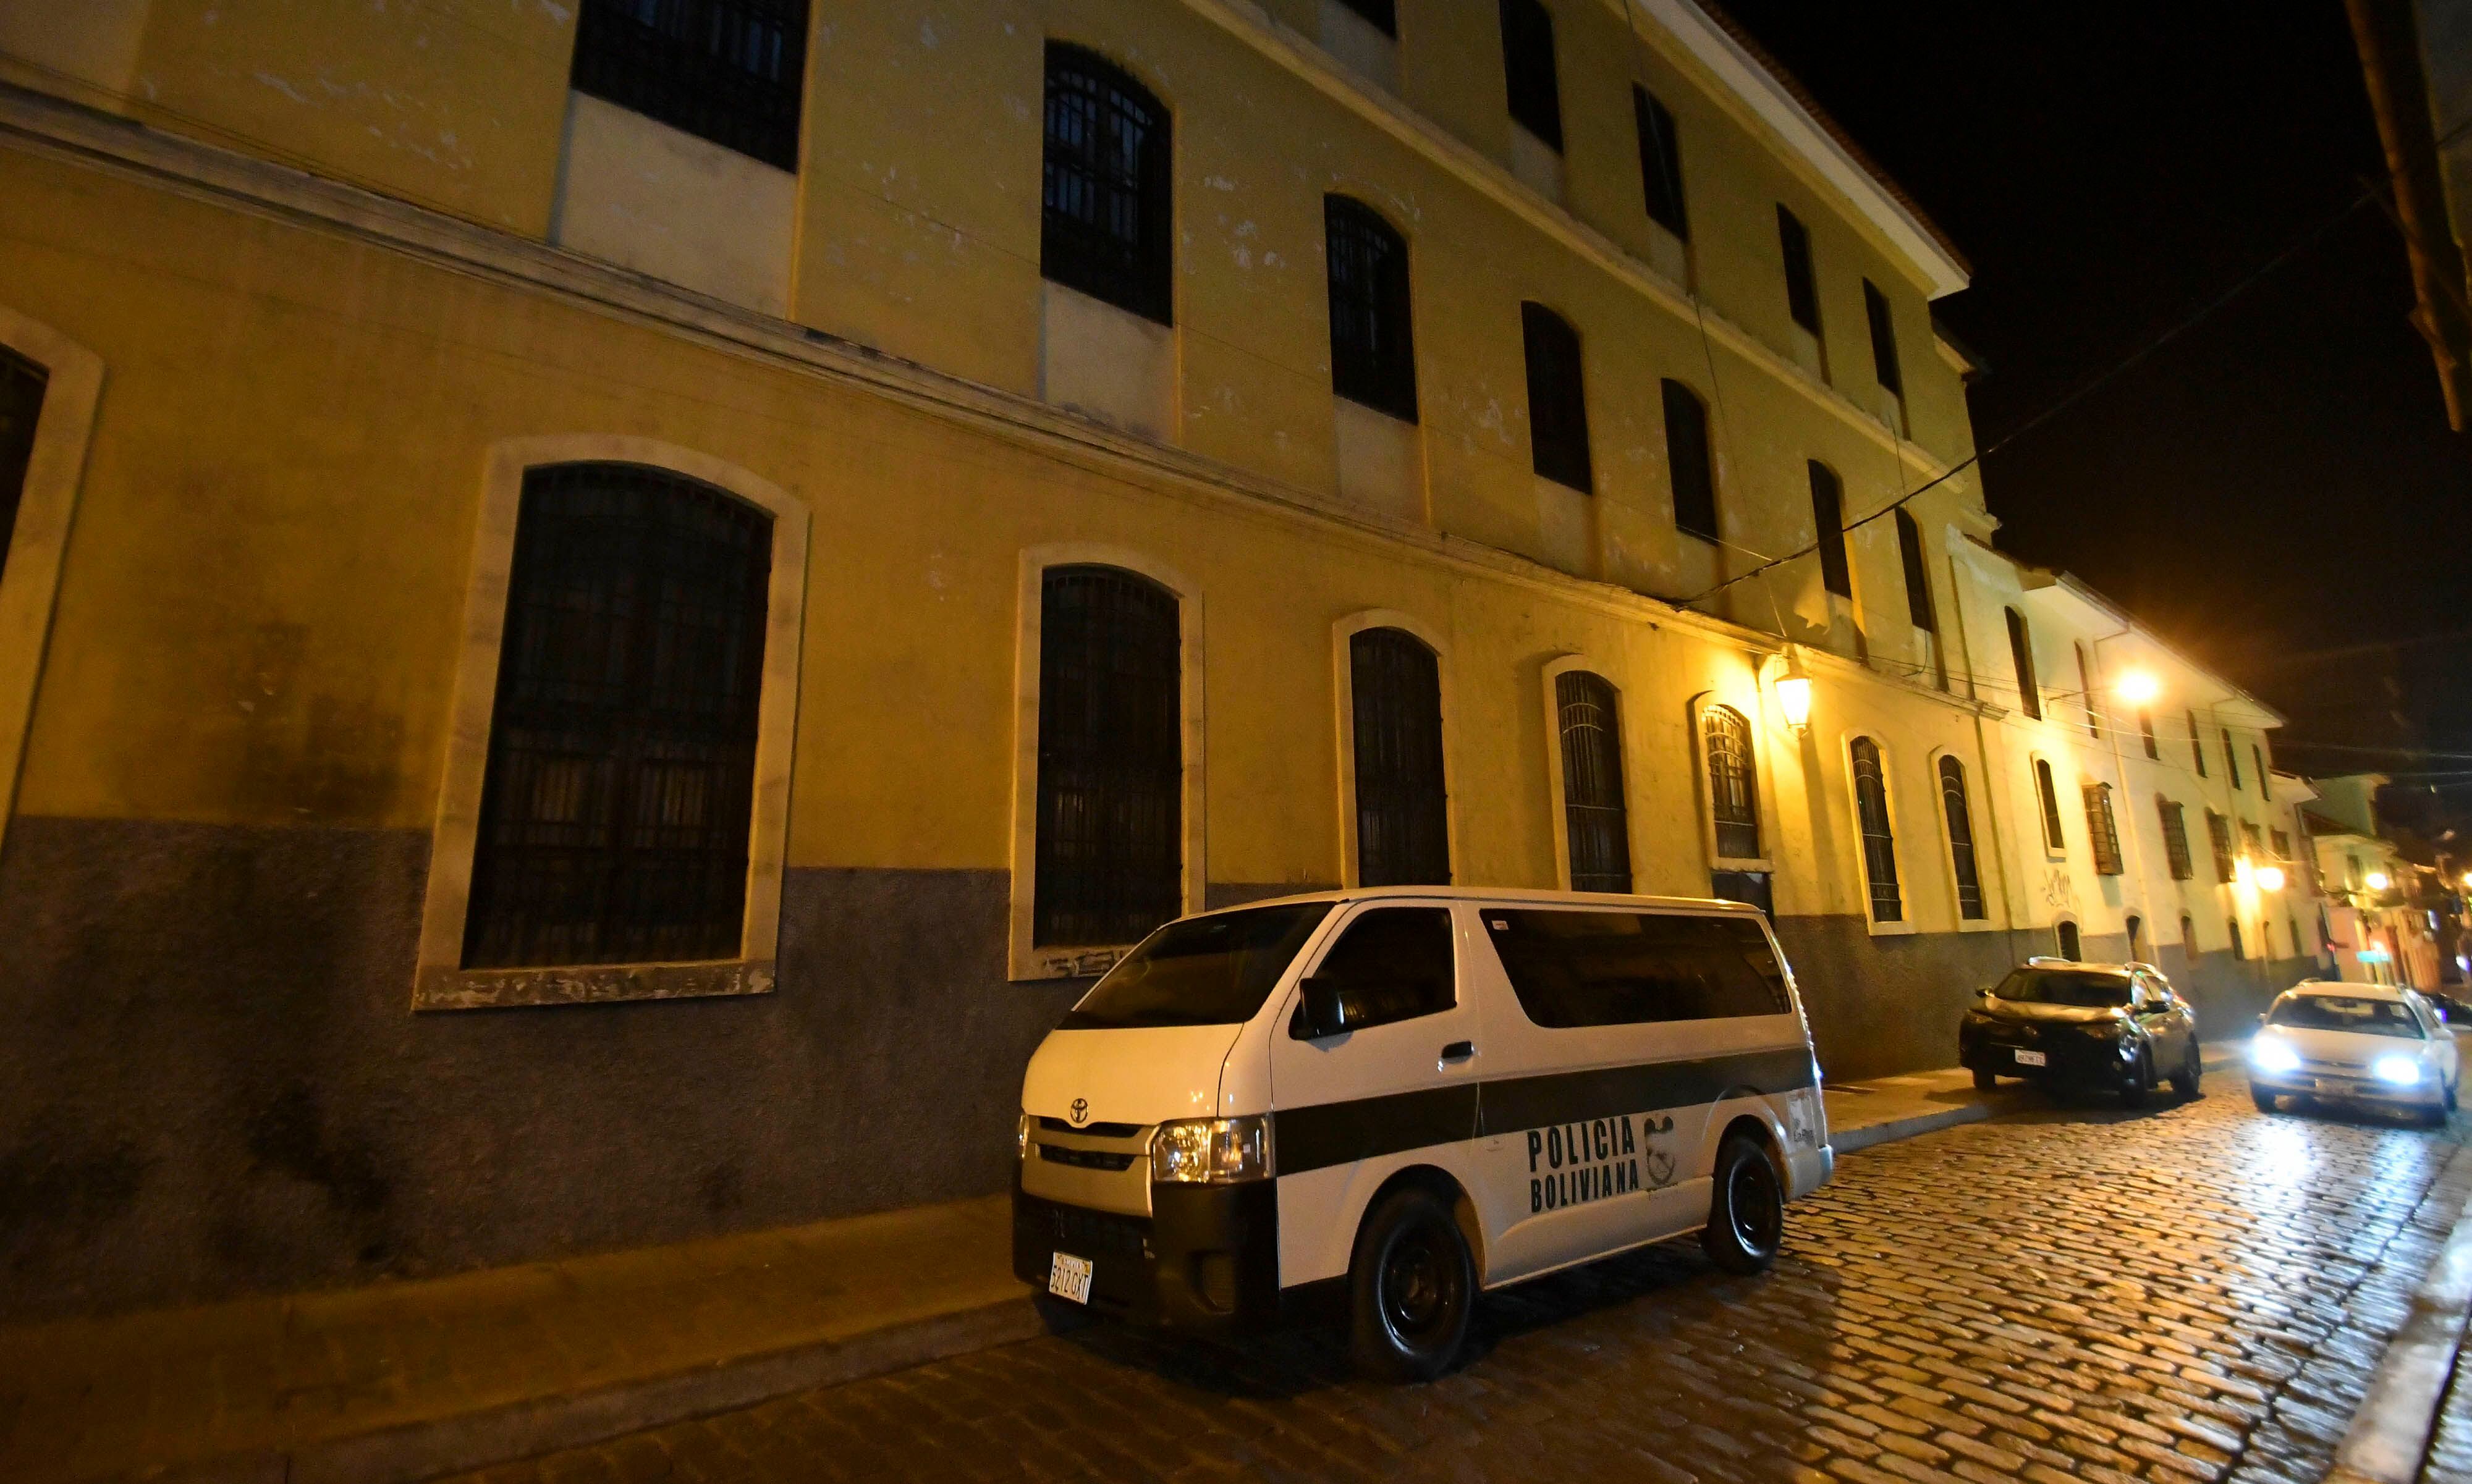 Sede de las oficinas de la Compañía de Jesús en La Paz (Bolivia), durante el registro de la policía ordenado por la Fiscalía, a raíz de las denuncias contra jesuitas por abuso de menores.